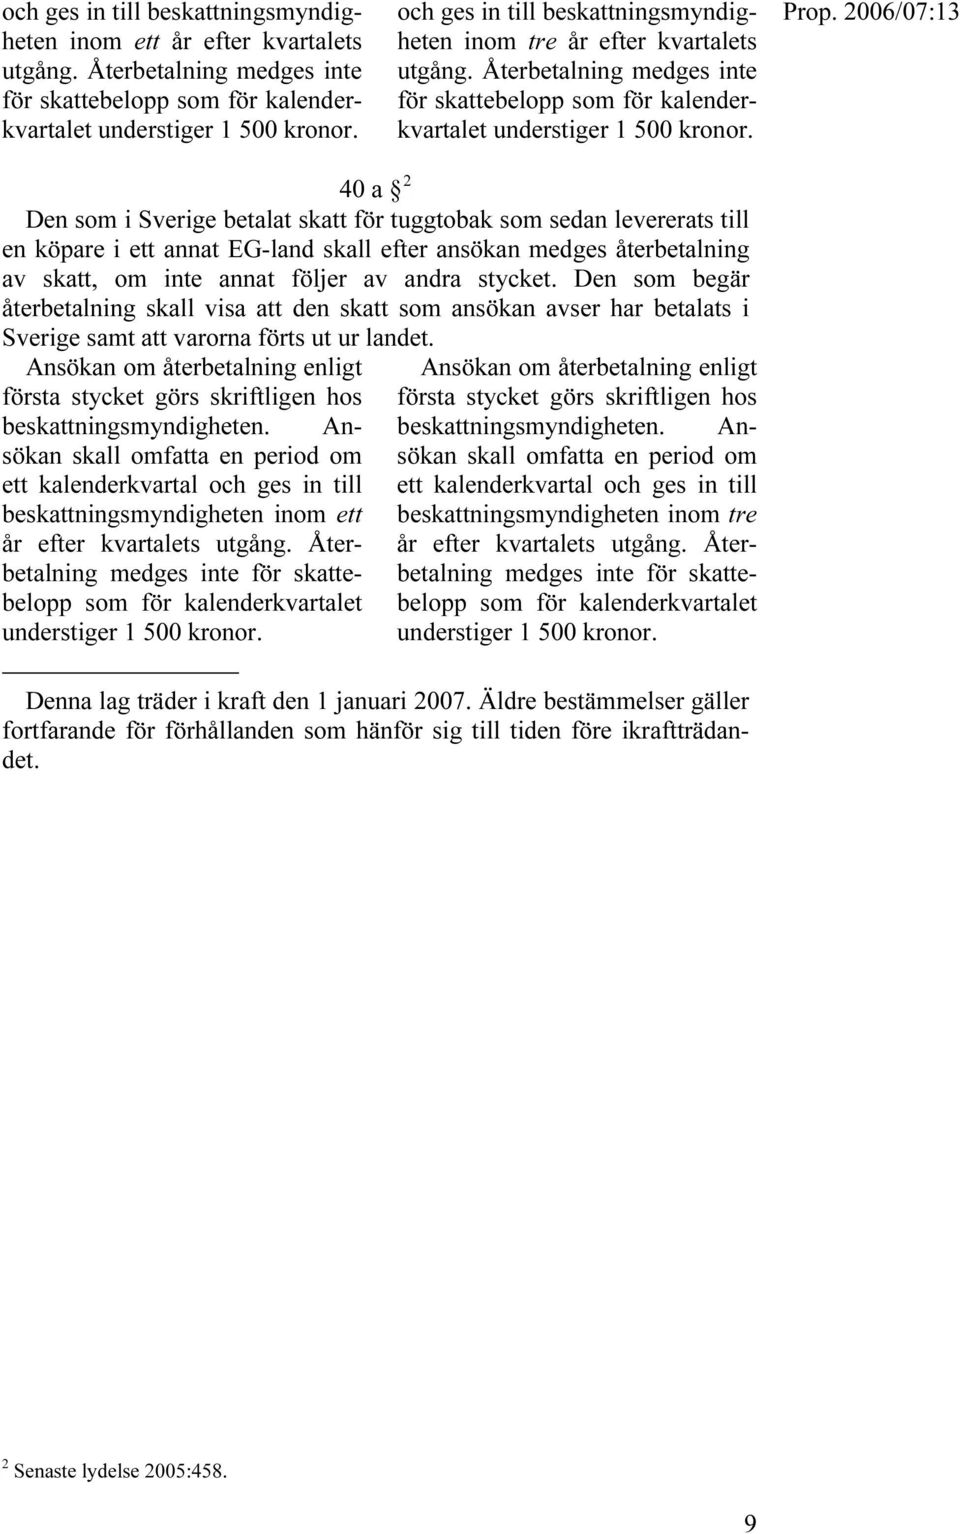 40 a TF Den som i Sverige betalat skatt för tuggtobak som sedan levererats till en köpare i ett annat EG-land skall efter ansökan medges återbetalning av skatt, om inte annat följer av andra stycket.